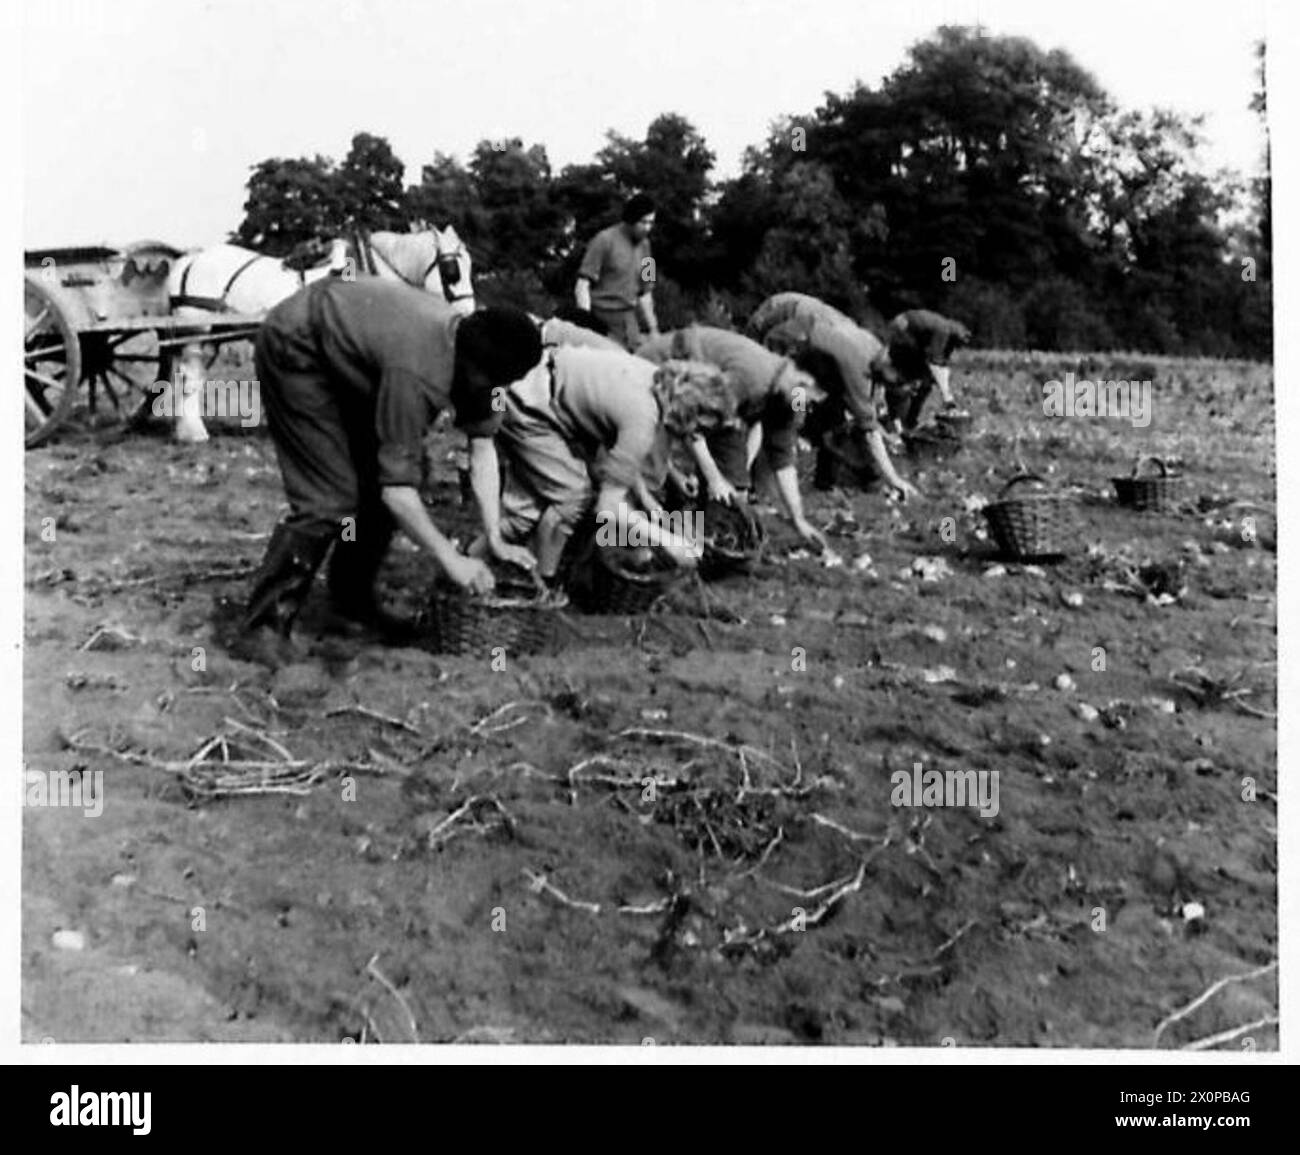 LES TROUPES AIDENT À RÉCOLTER LES POMMES DE TERRE - les soldats aident les filles de l'Armée de terre à récolter les pommes de terre dans une ferme du Commandement de l'est. Négatif photographique, Armée britannique Banque D'Images